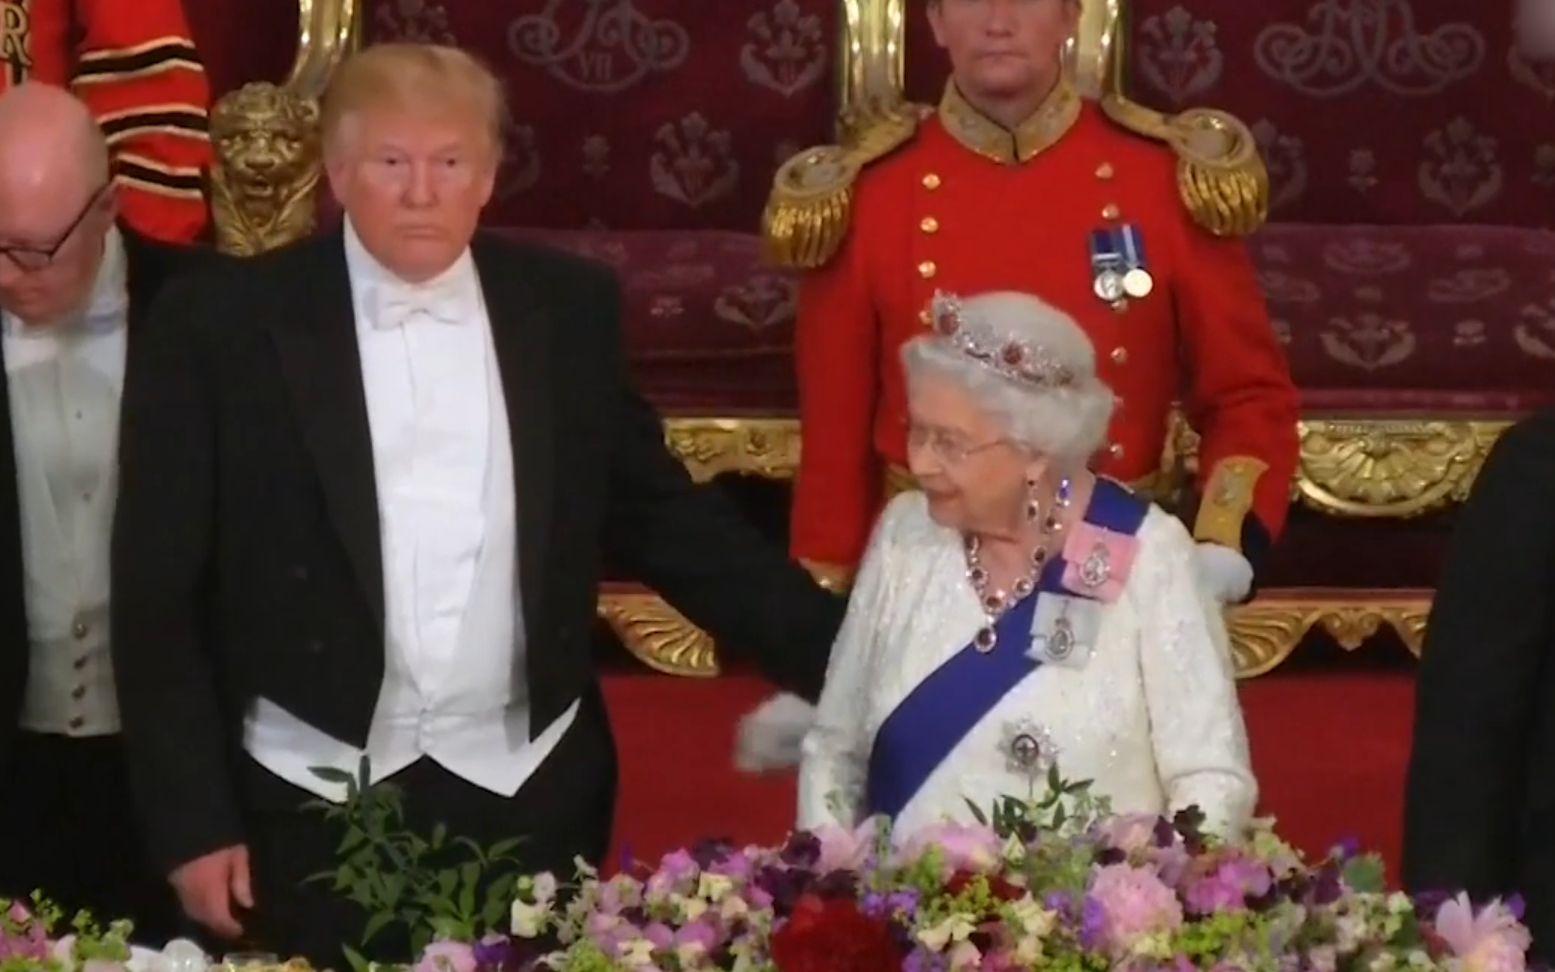 拍拍肩膀! 特朗普访英触碰女王被指严重失礼